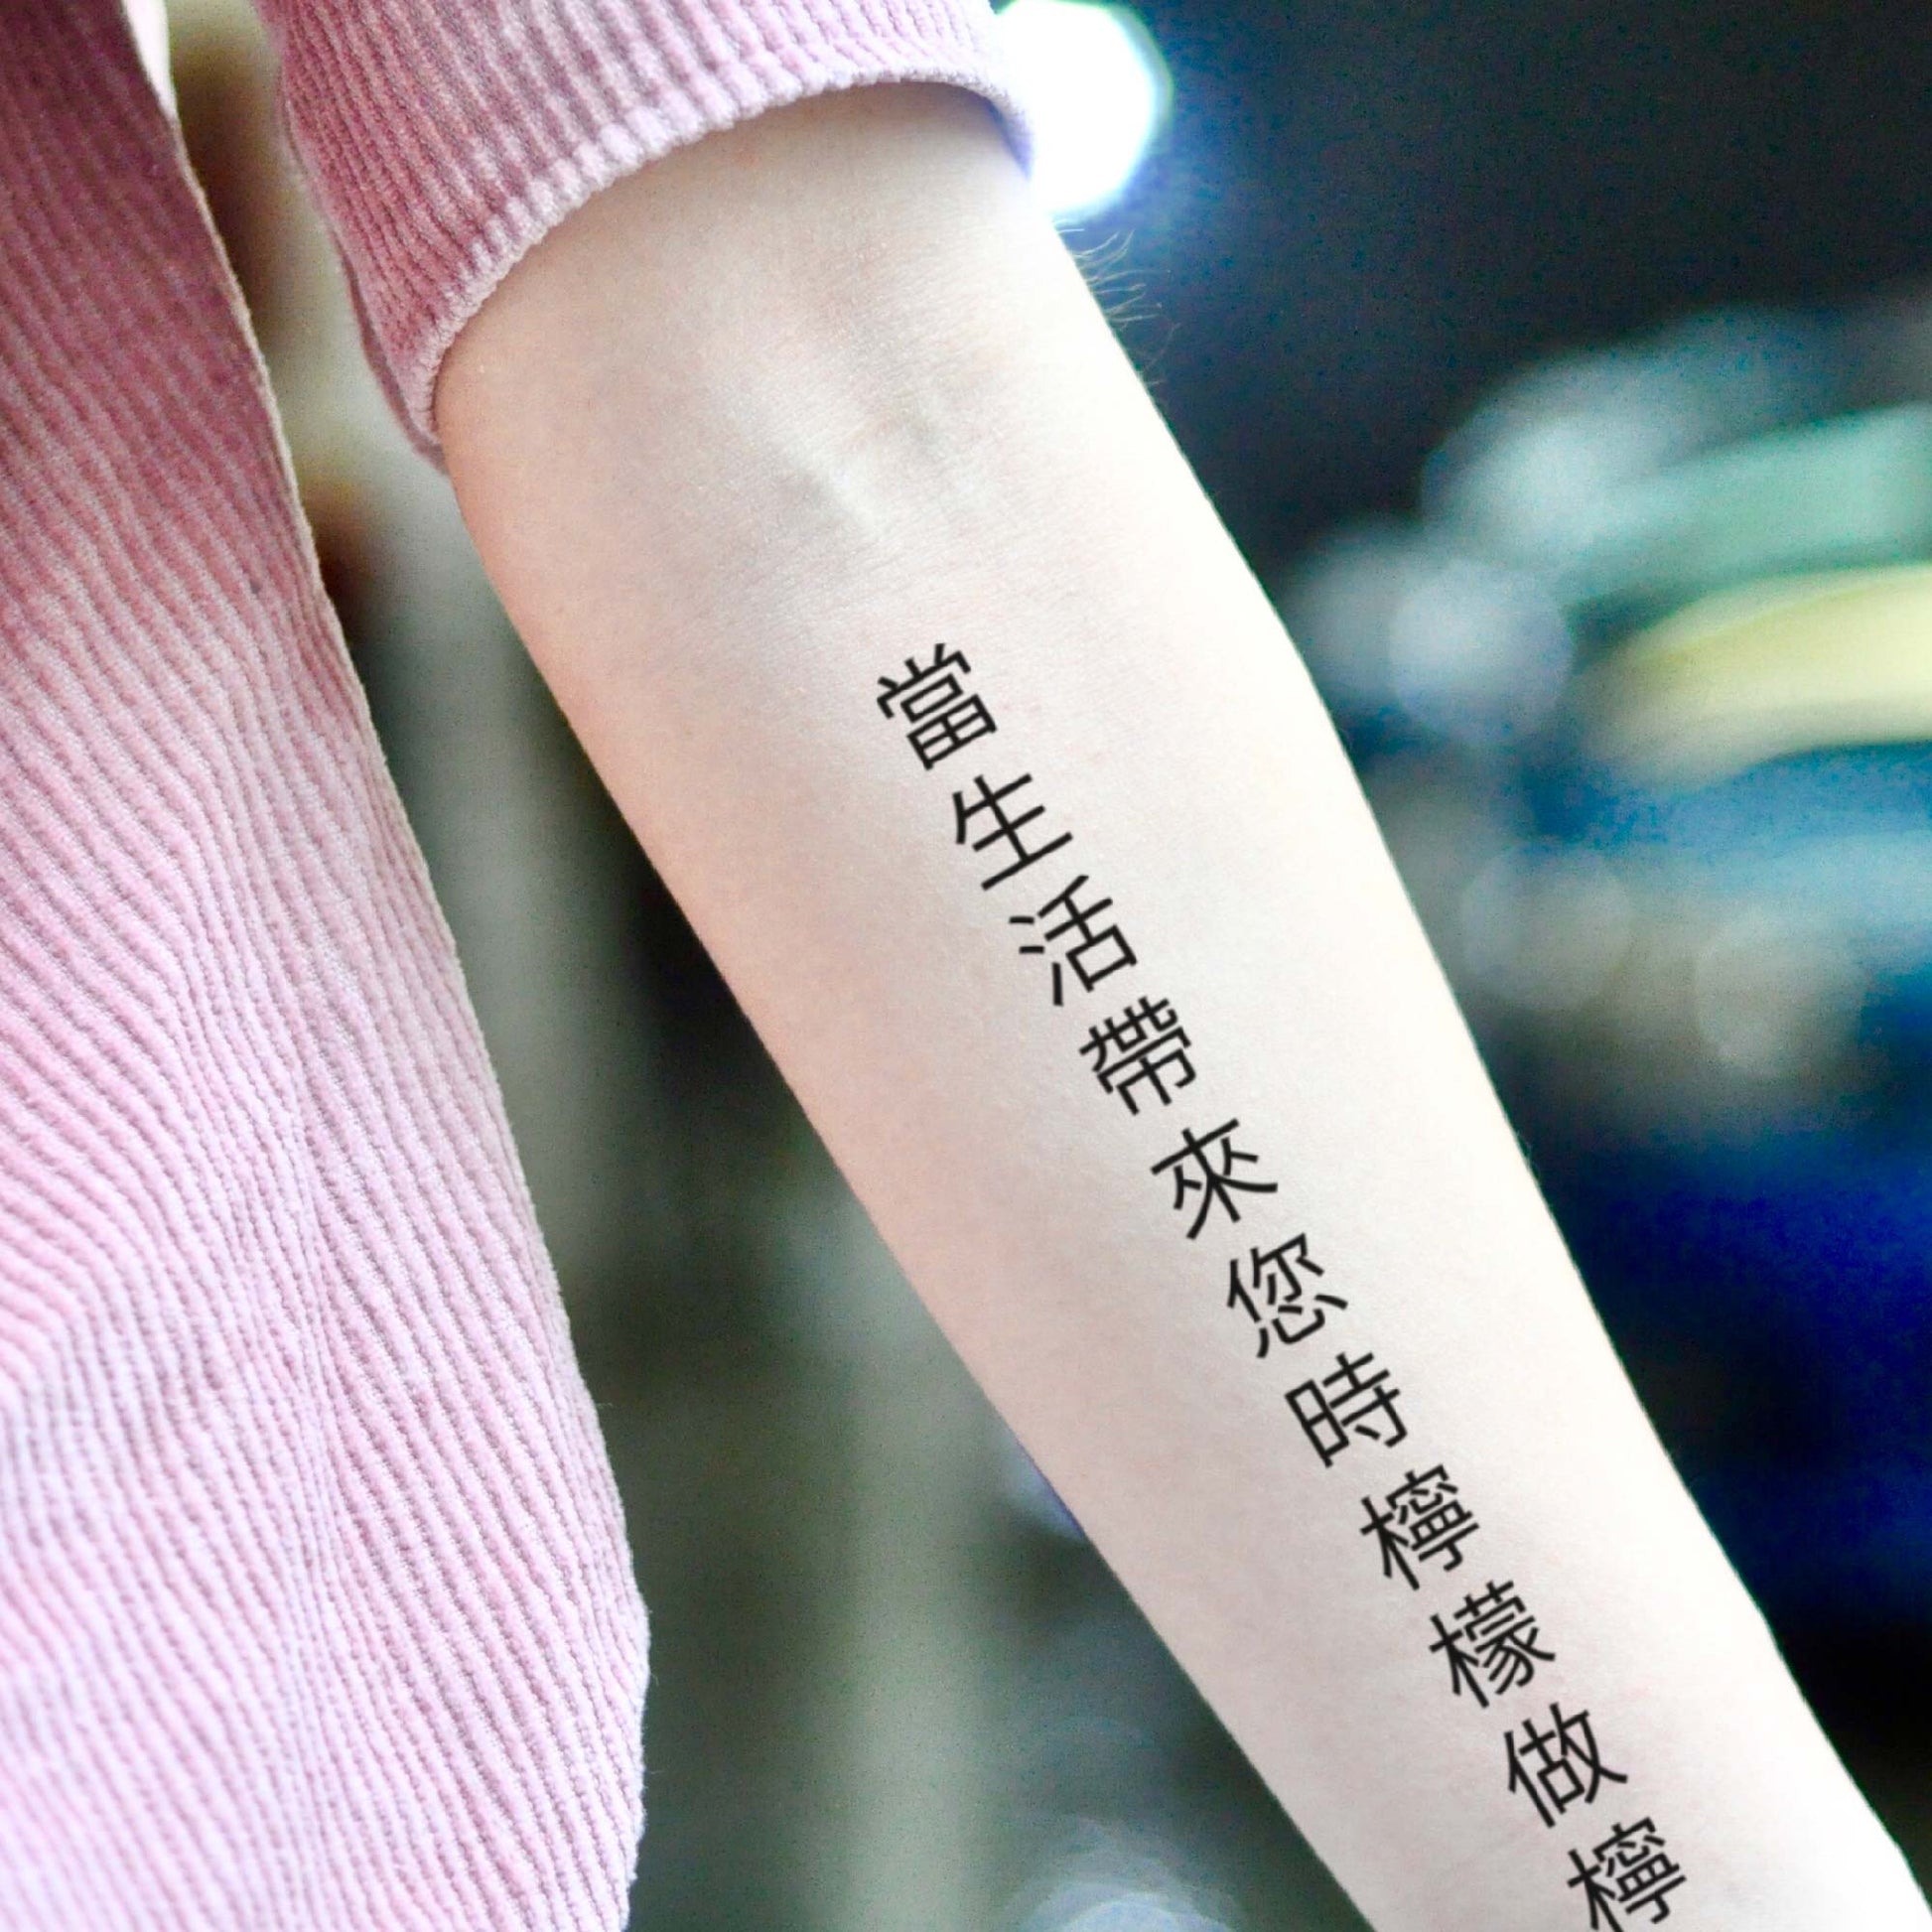 fake medium riley reid chinese lettering 當生活帶來您時檸檬做檸檬水 when life gives you lemons make lemonade temporary tattoo sticker design idea on inner arm forearm back